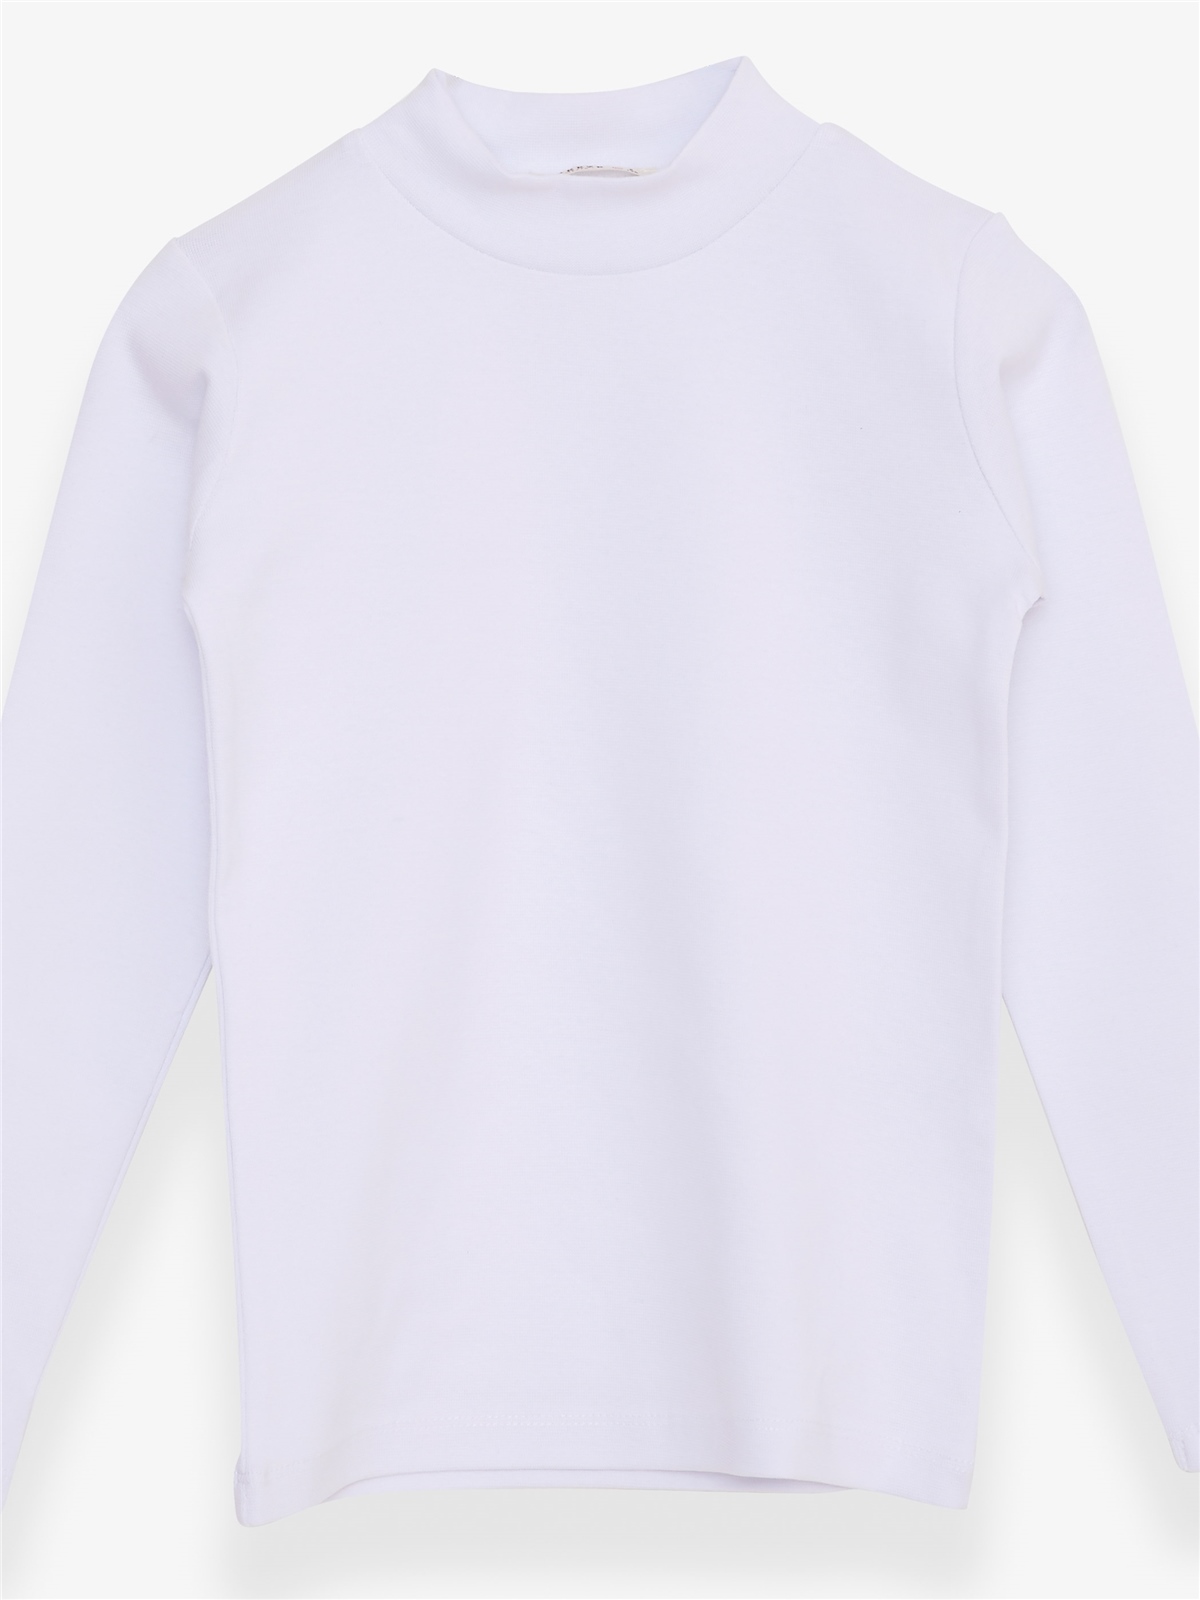 Kız Çocuk Uzun Kollu Tişört Basic Beyaz 6 Yaş - Pamuklu Modeller | Breeze